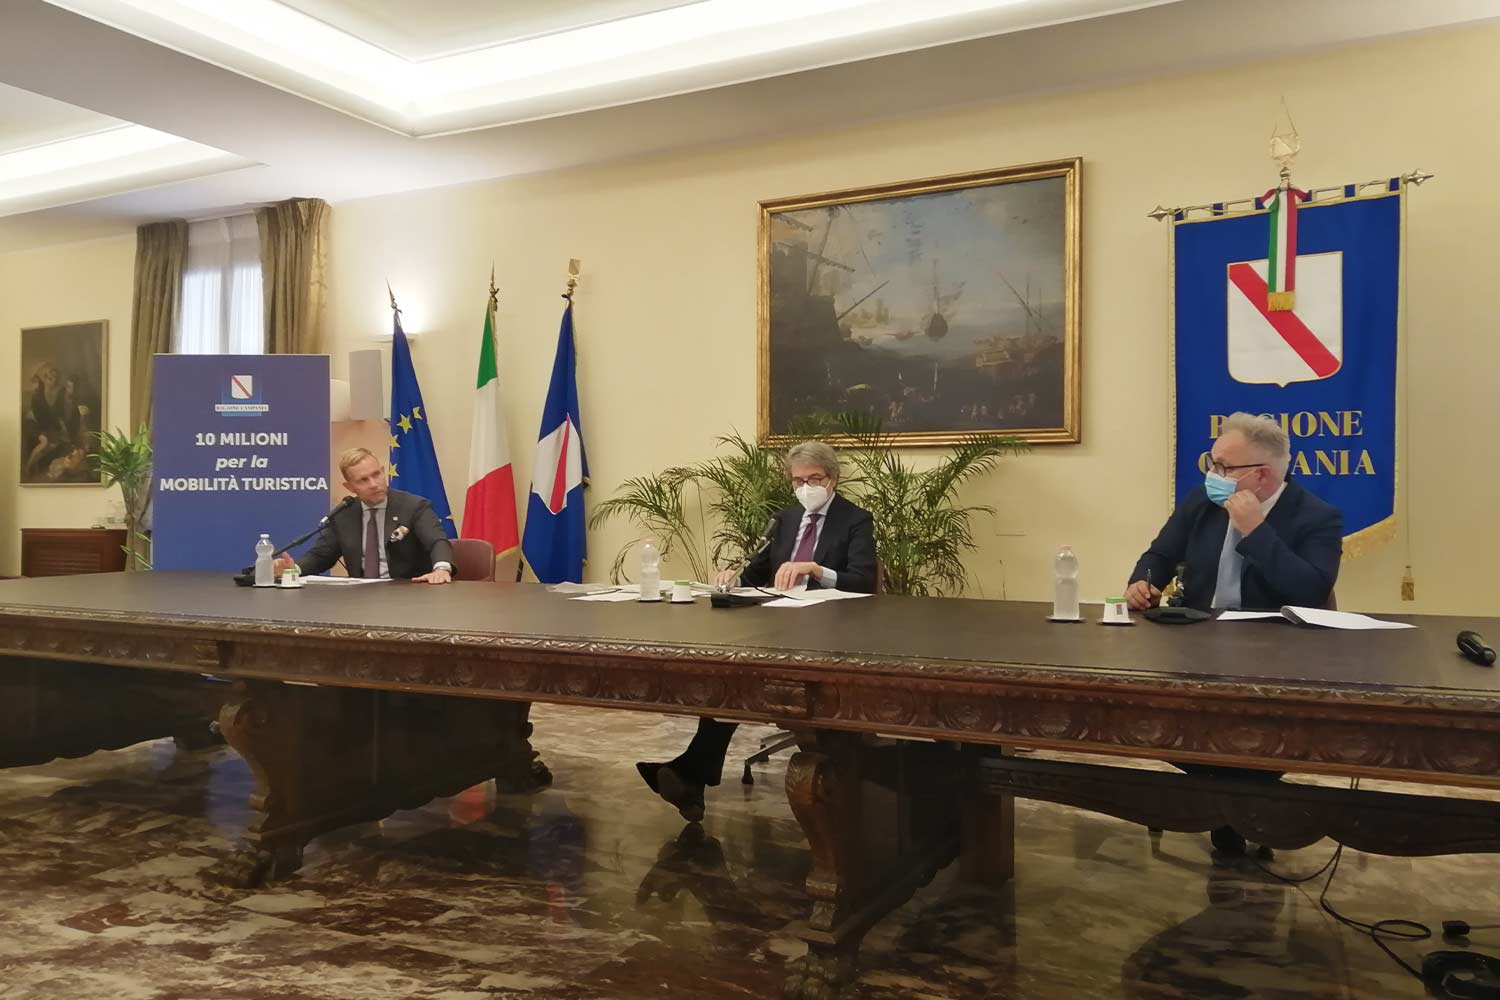 Presentazione programma treni storici 2022 in Campania